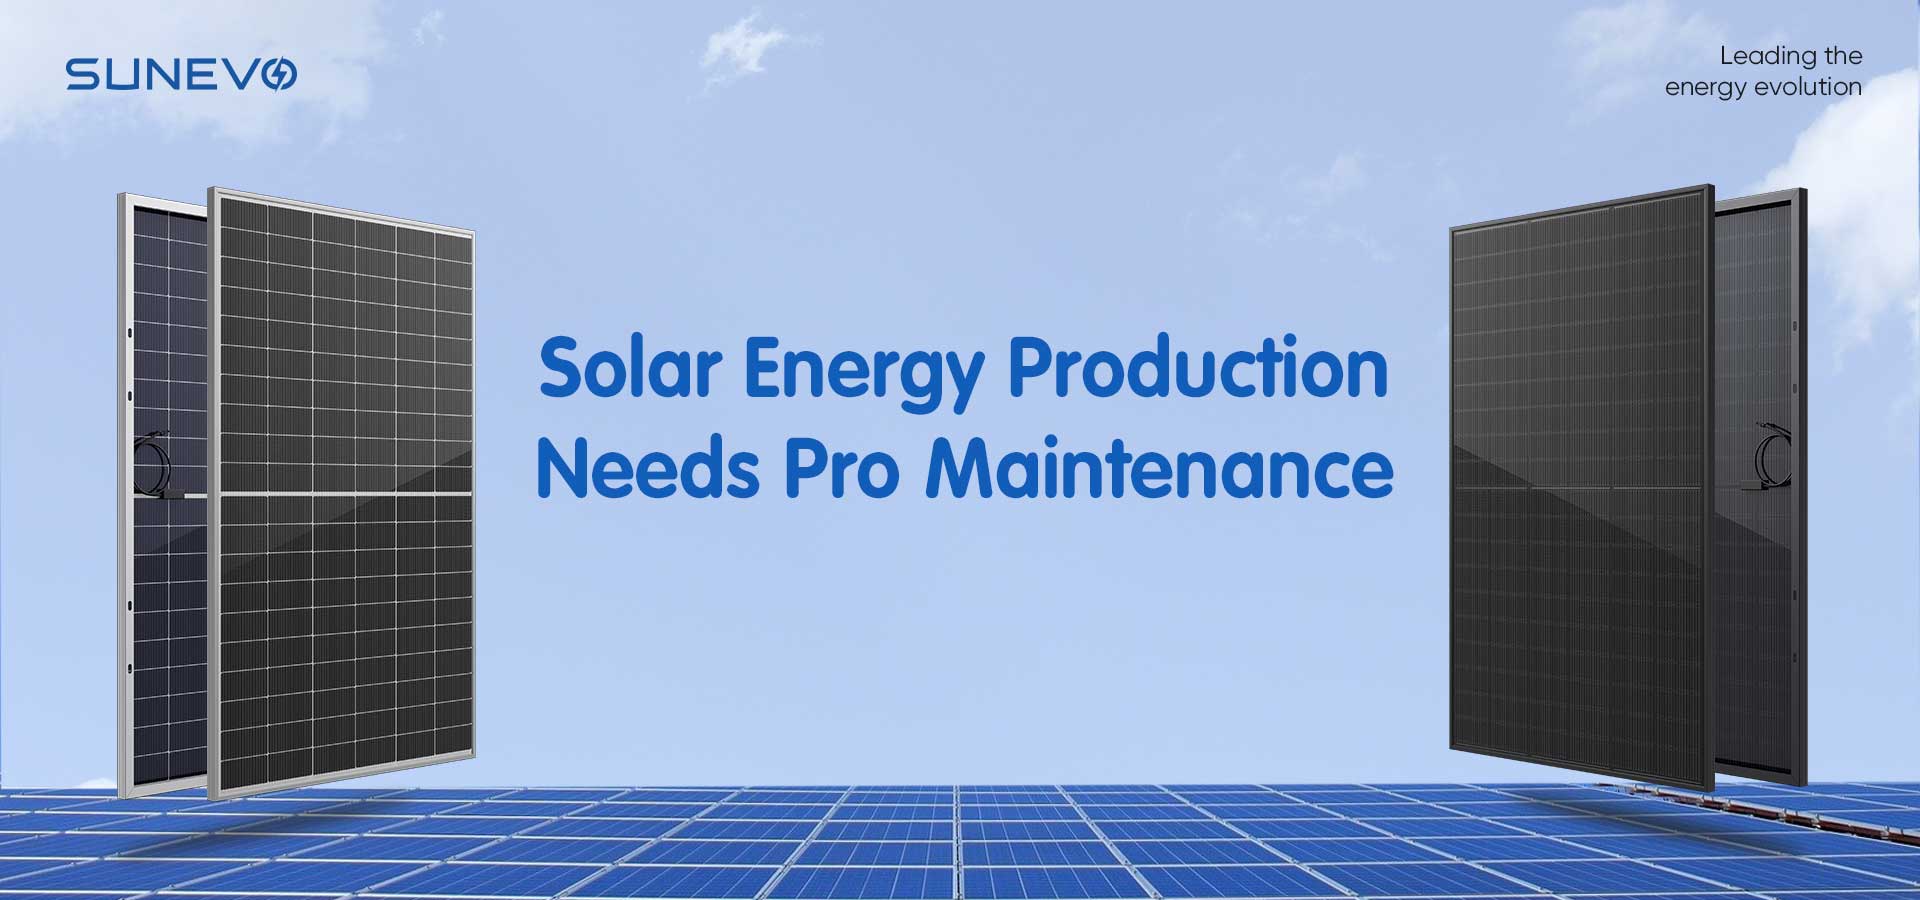 Skorzystaj z Pro Maintenance, aby uzyskać optymalne wytwarzanie energii słonecznej